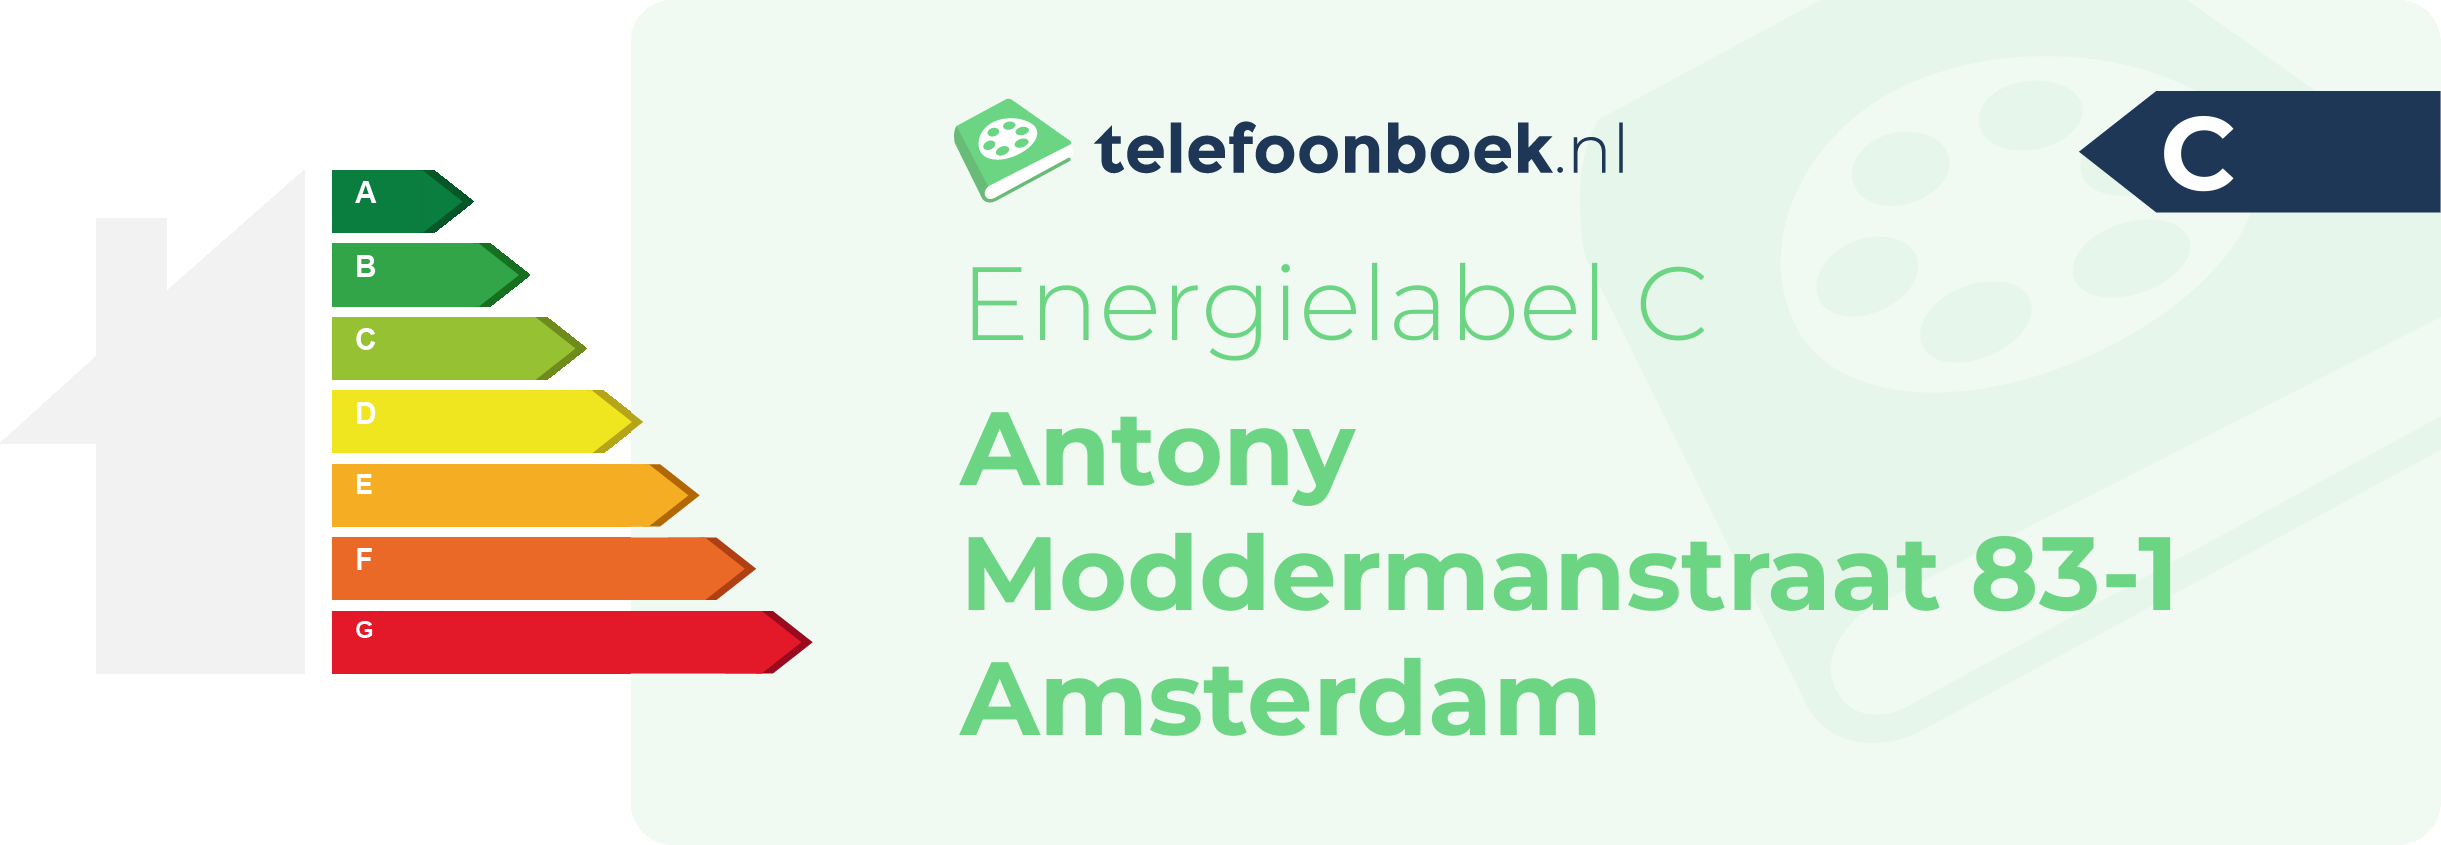 Energielabel Antony Moddermanstraat 83-1 Amsterdam